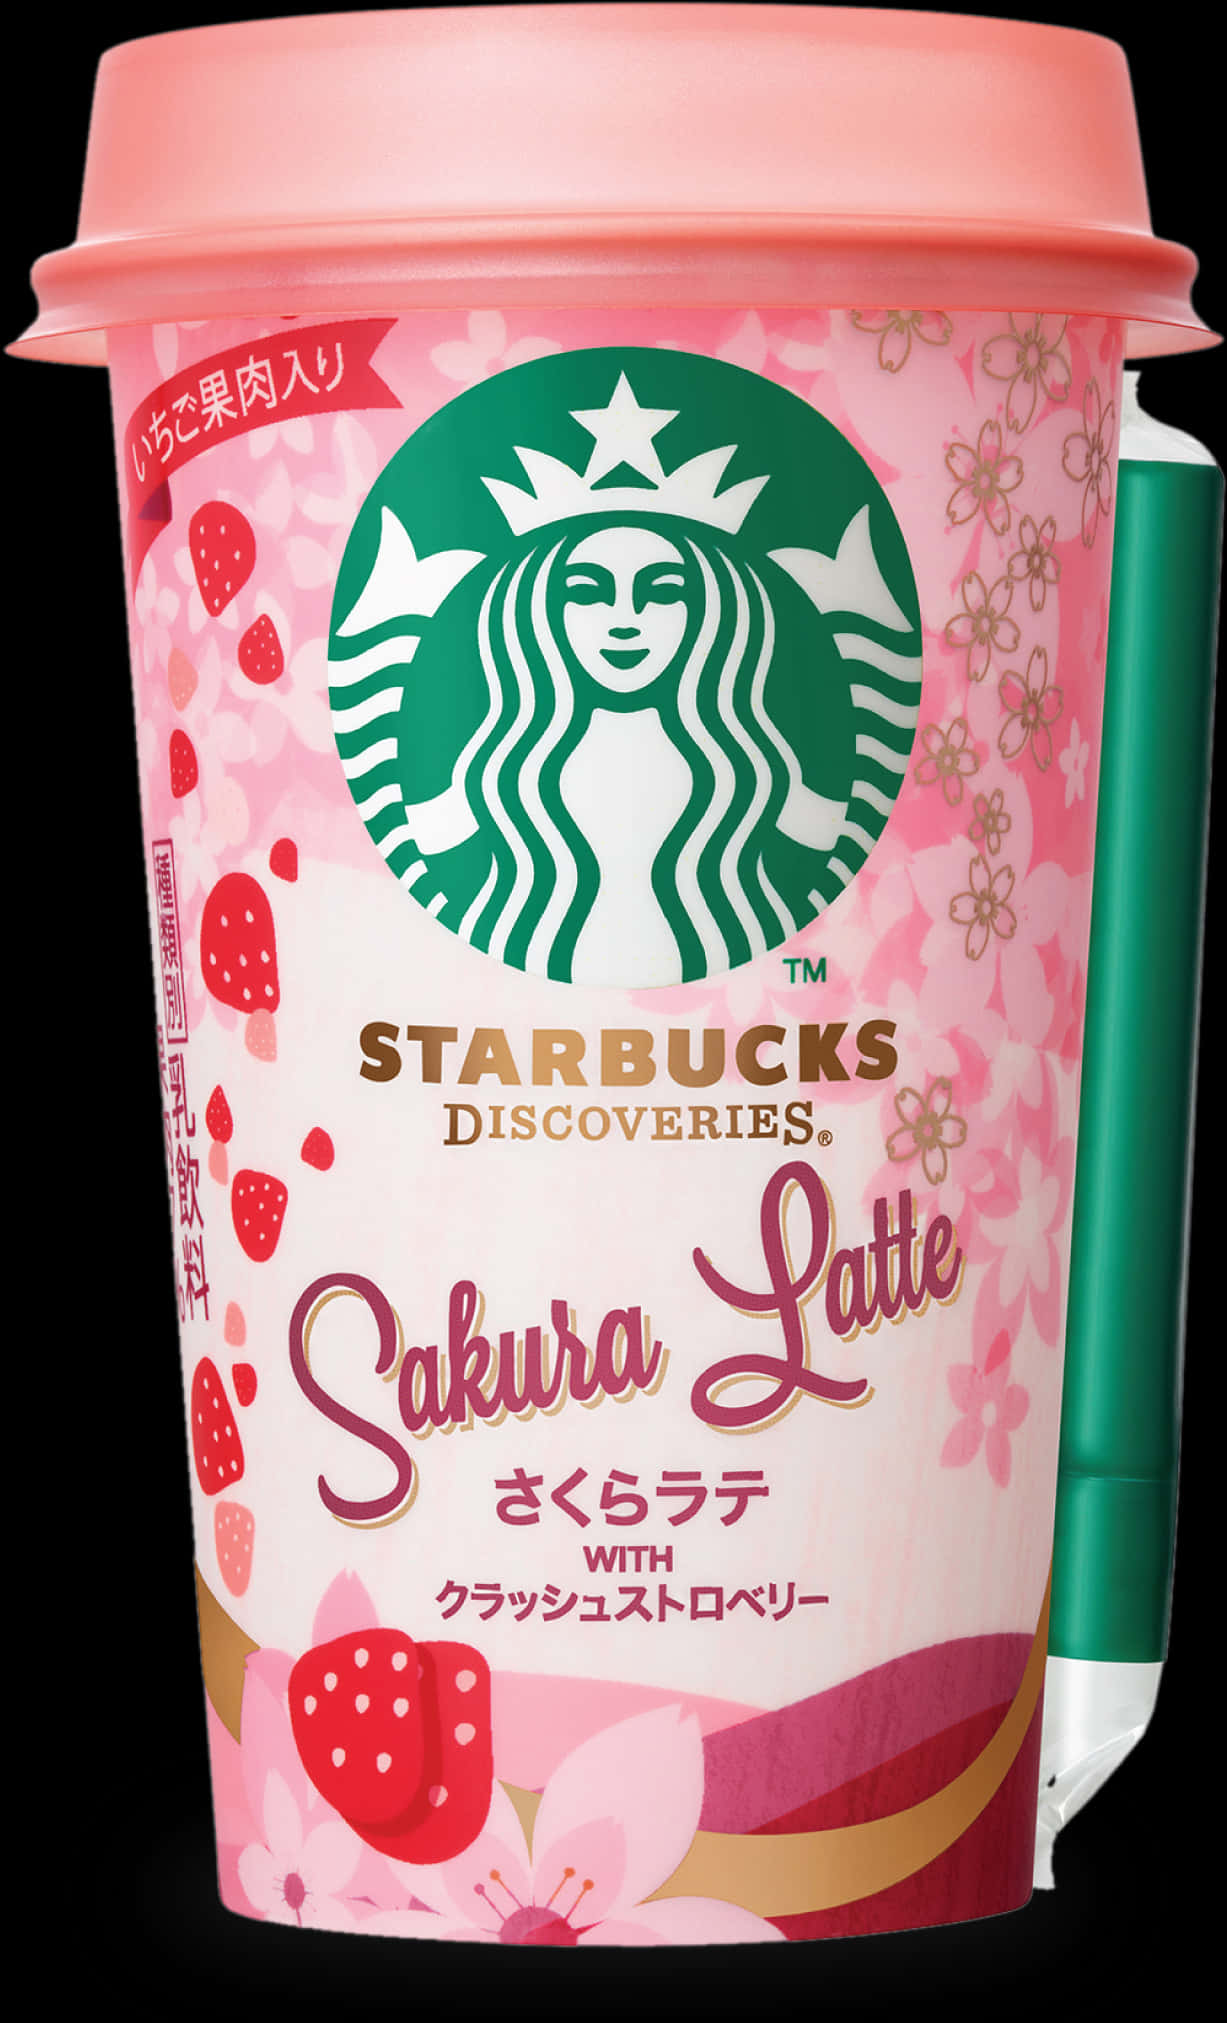 Starbucks Sakura Latte Packaging PNG image